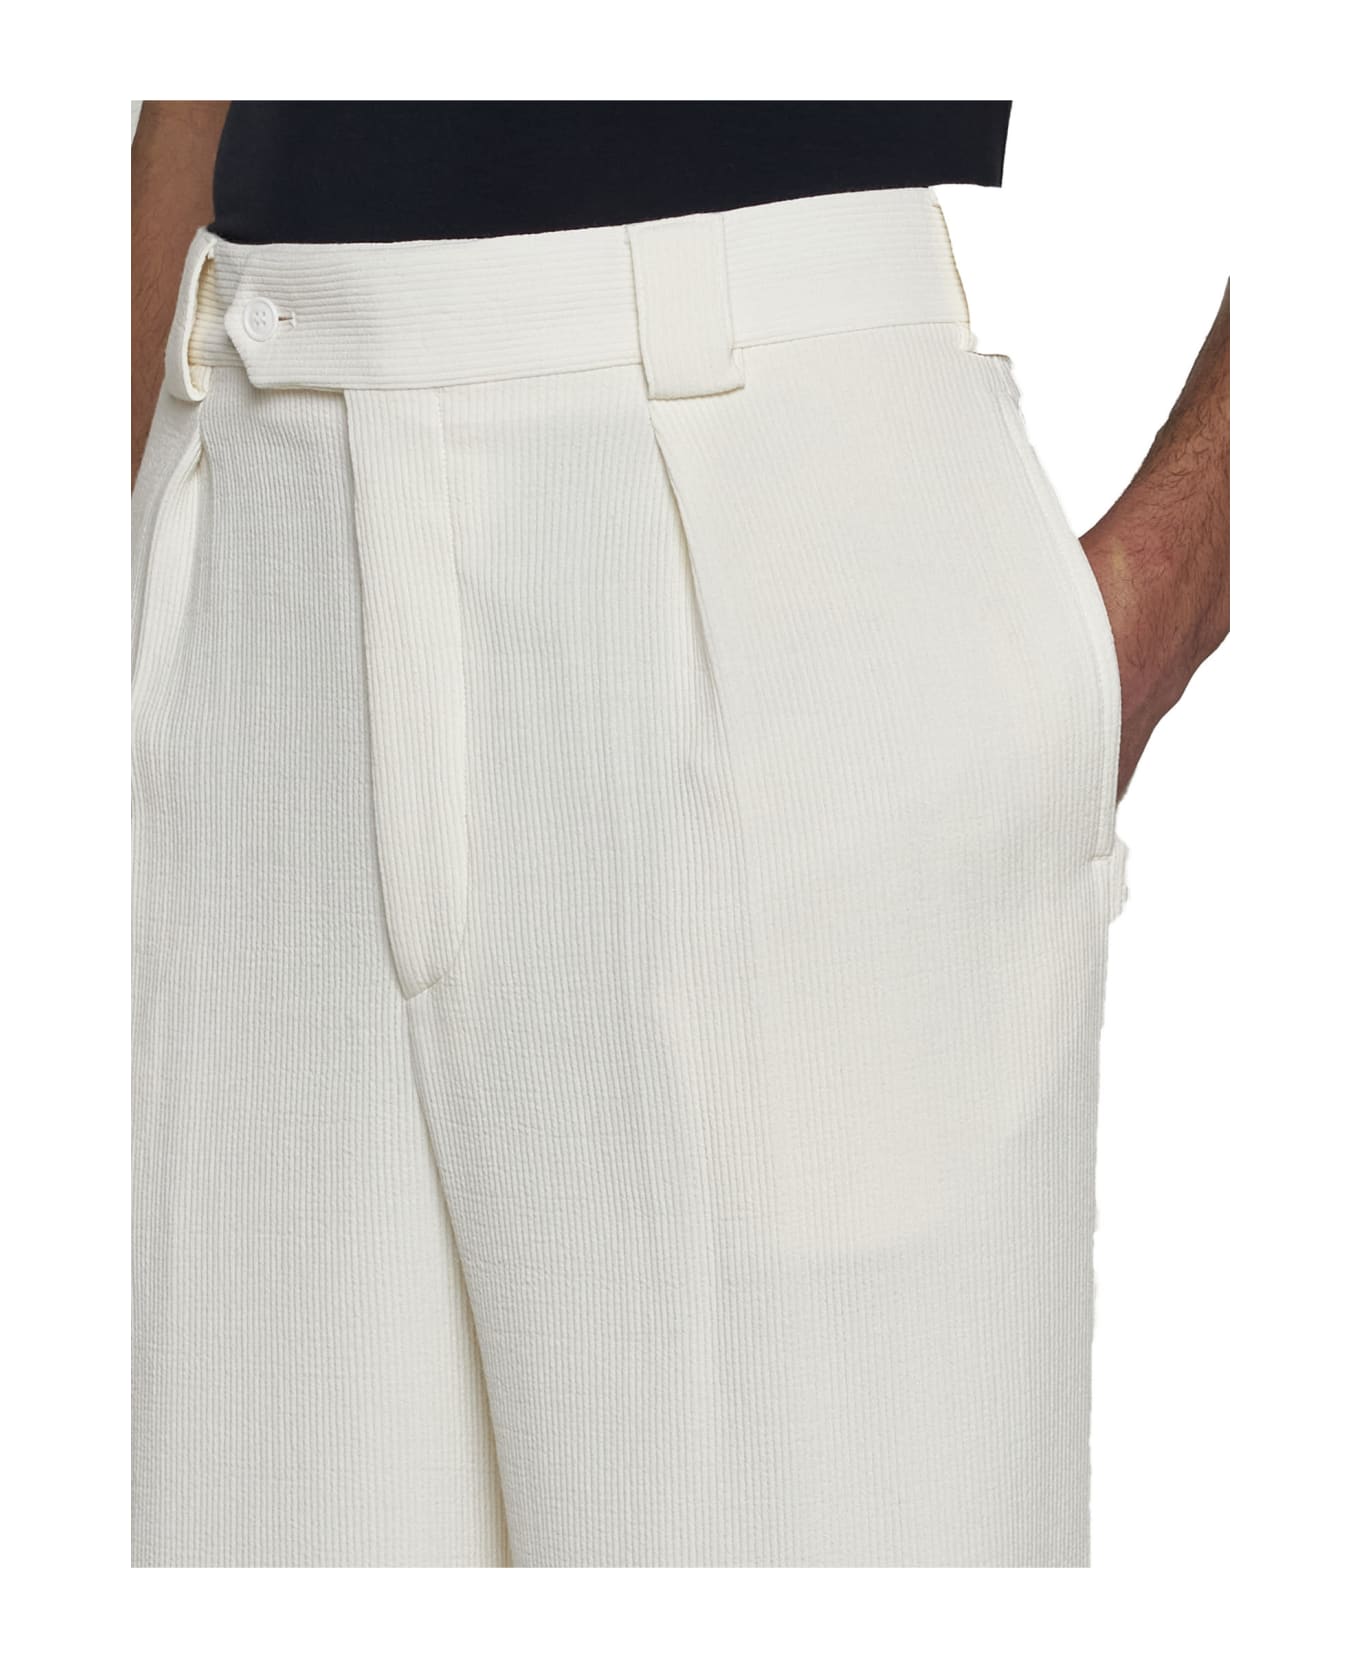 Giorgio Armani Pants - Brilliant white